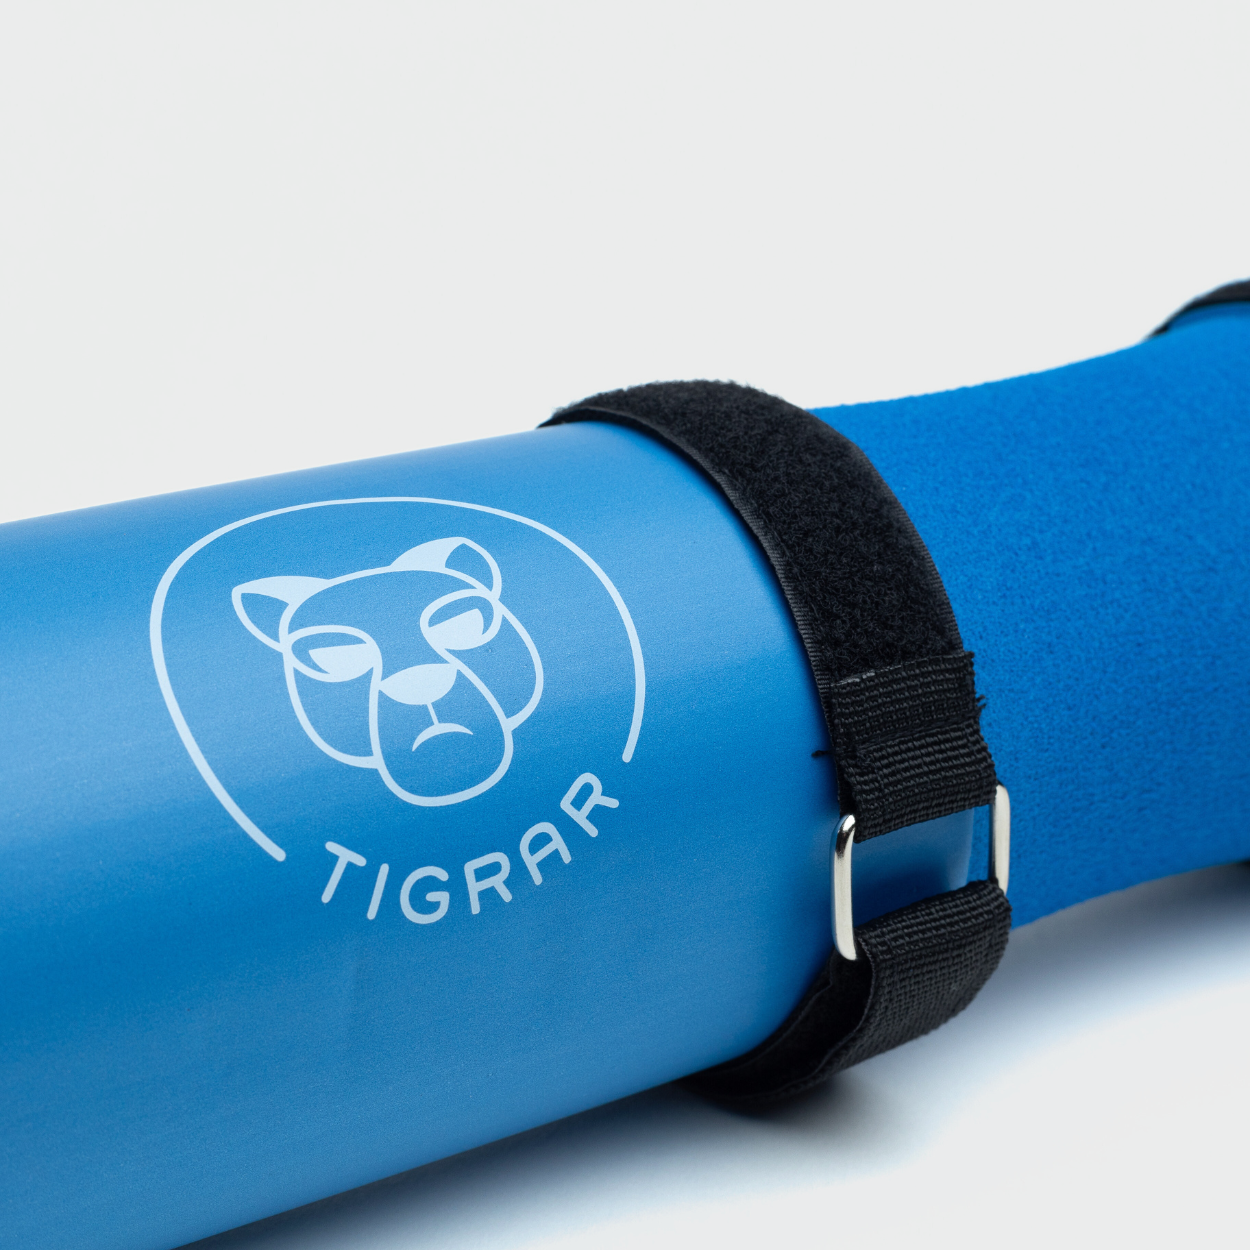 Blauwe Tigrar hip thrust kussen close-up, betrouwbare keuze voor fitnessliefhebbers.